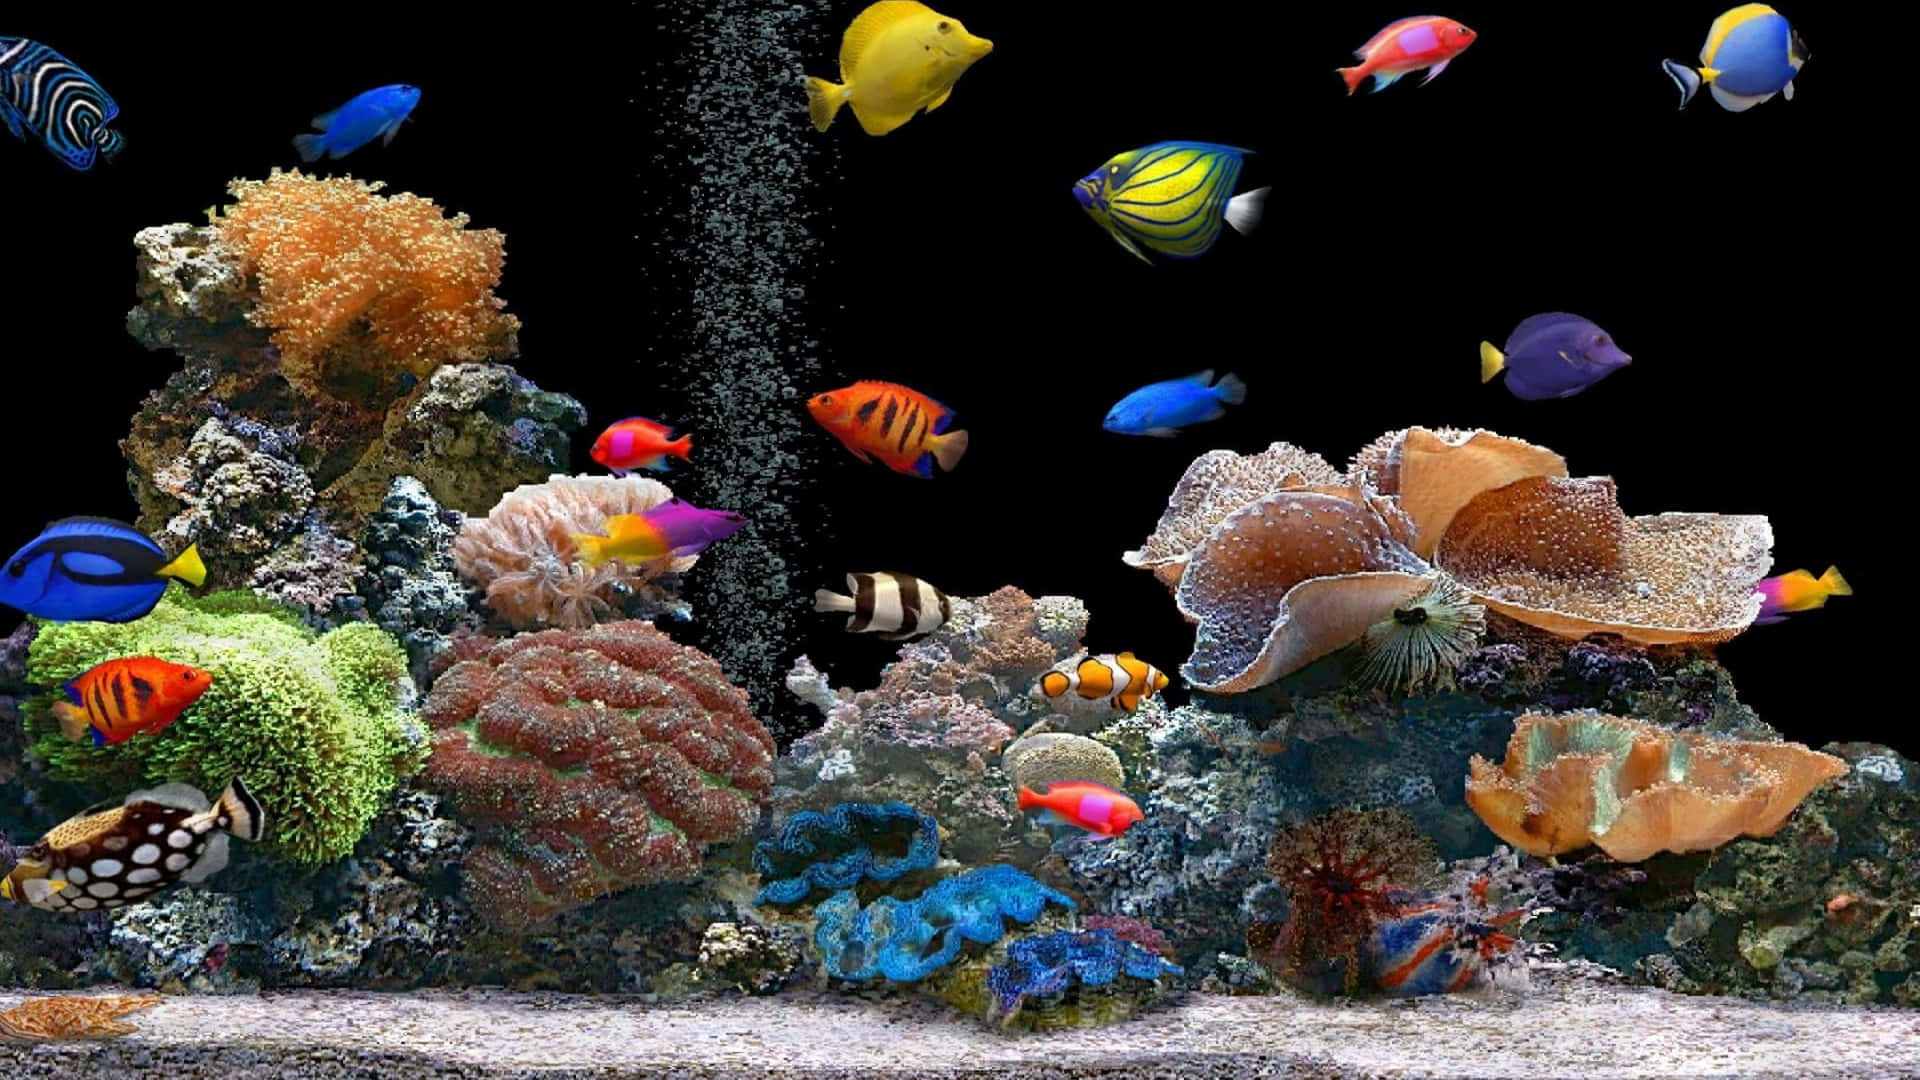 Wallpaper: 4K fisk og andre havdyr i et akvarium tapet Wallpaper